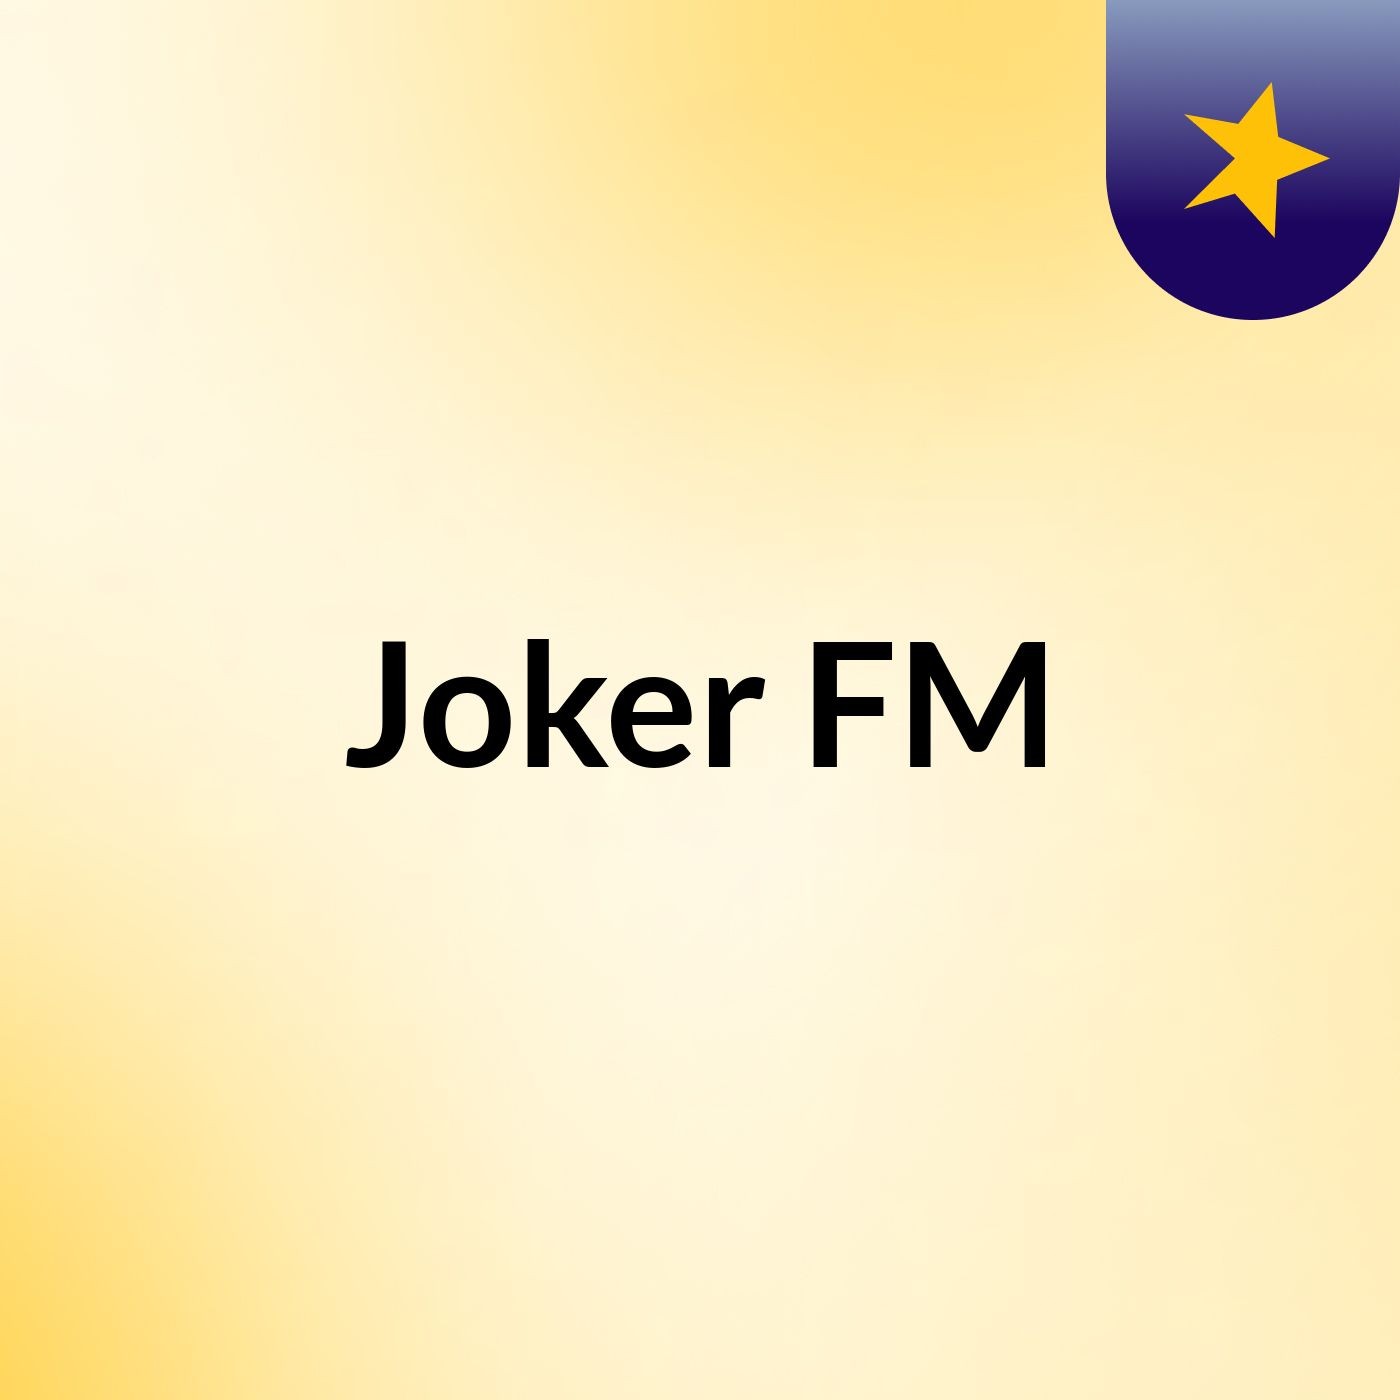 Joker FM